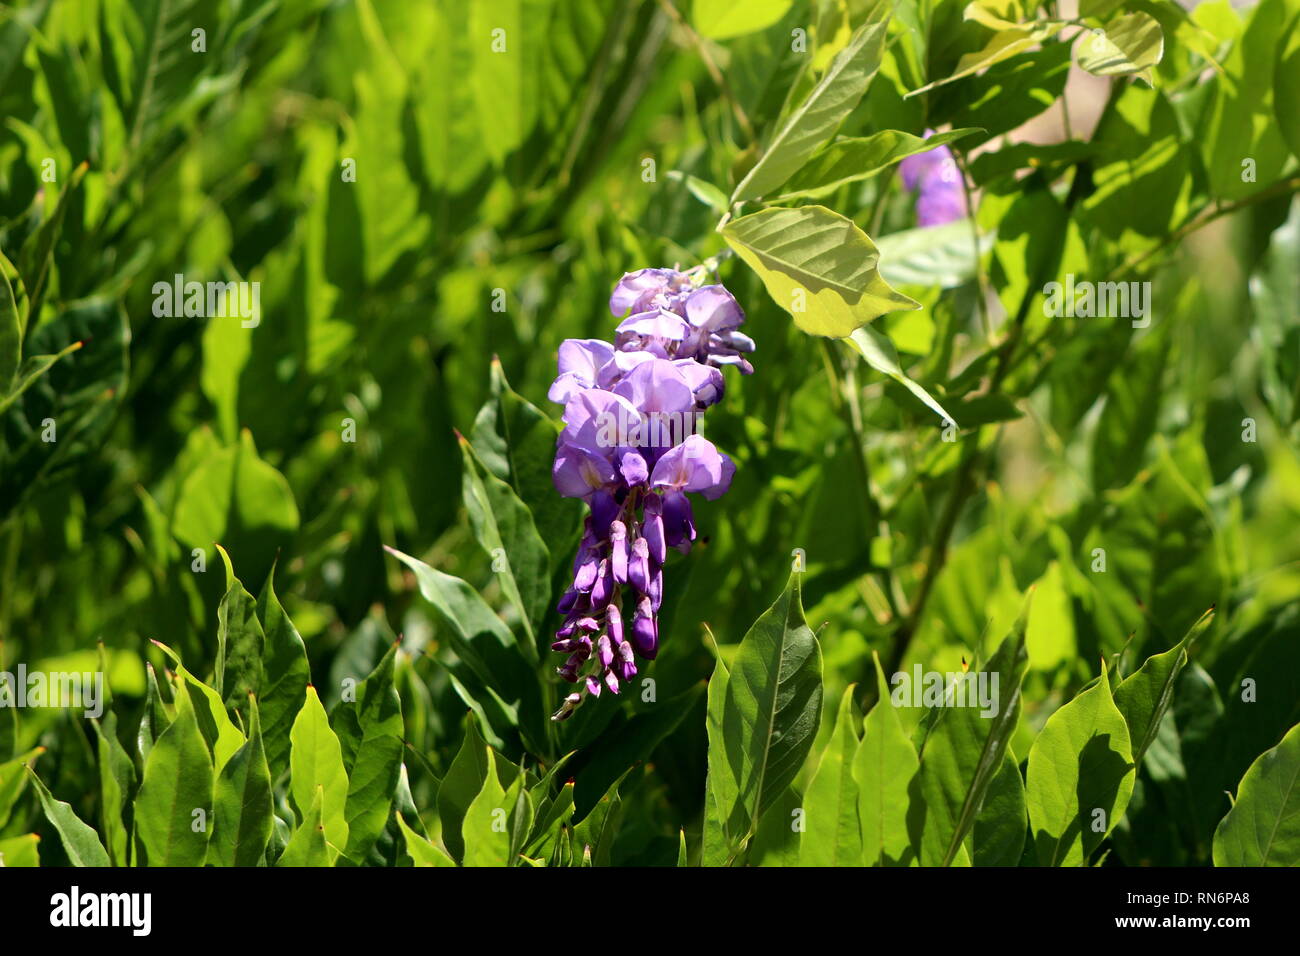 Wisteria planta con flores en racimos colgantes parcialmente abierto con  pétalos violeta púrpura rodeado con alta densidad de hojas en días soleados  Fotografía de stock - Alamy